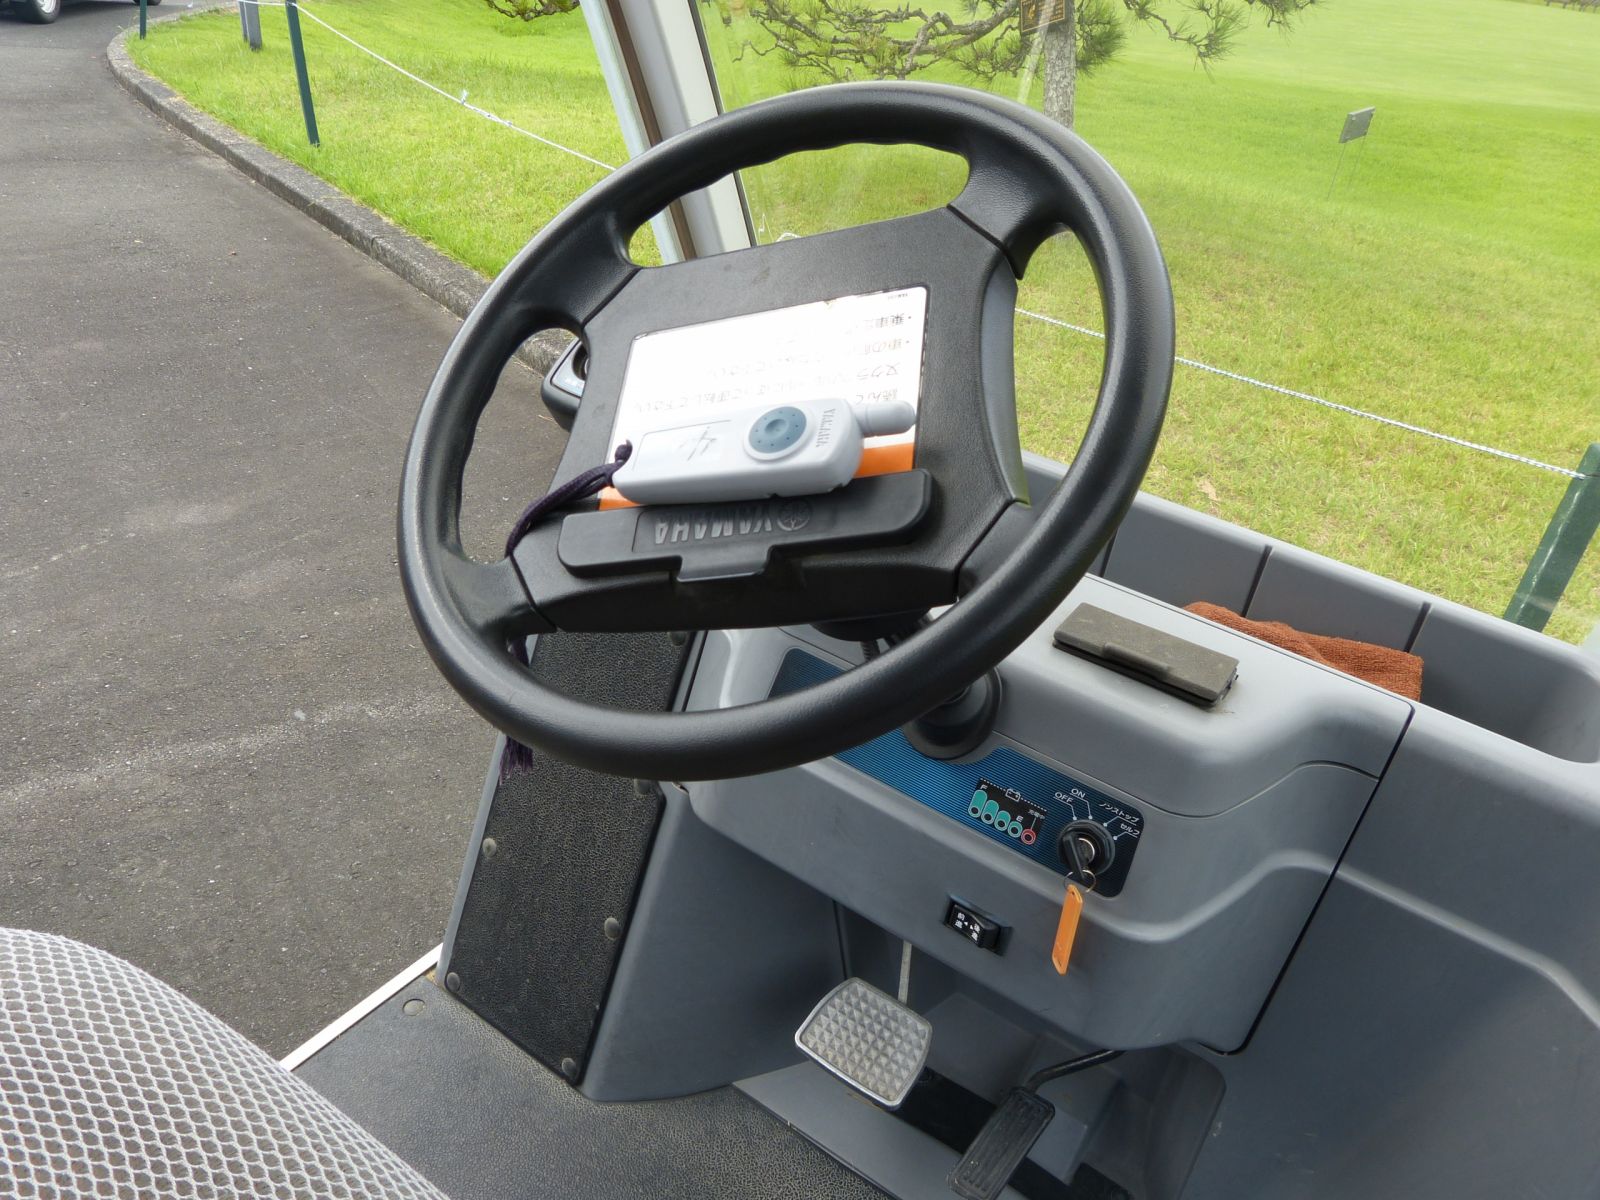 無人球車在日本相當普片，靠著道路下方埋設的感應器前進，採一鍵式操作，並配備GPS系統，簡便舒適又安全。